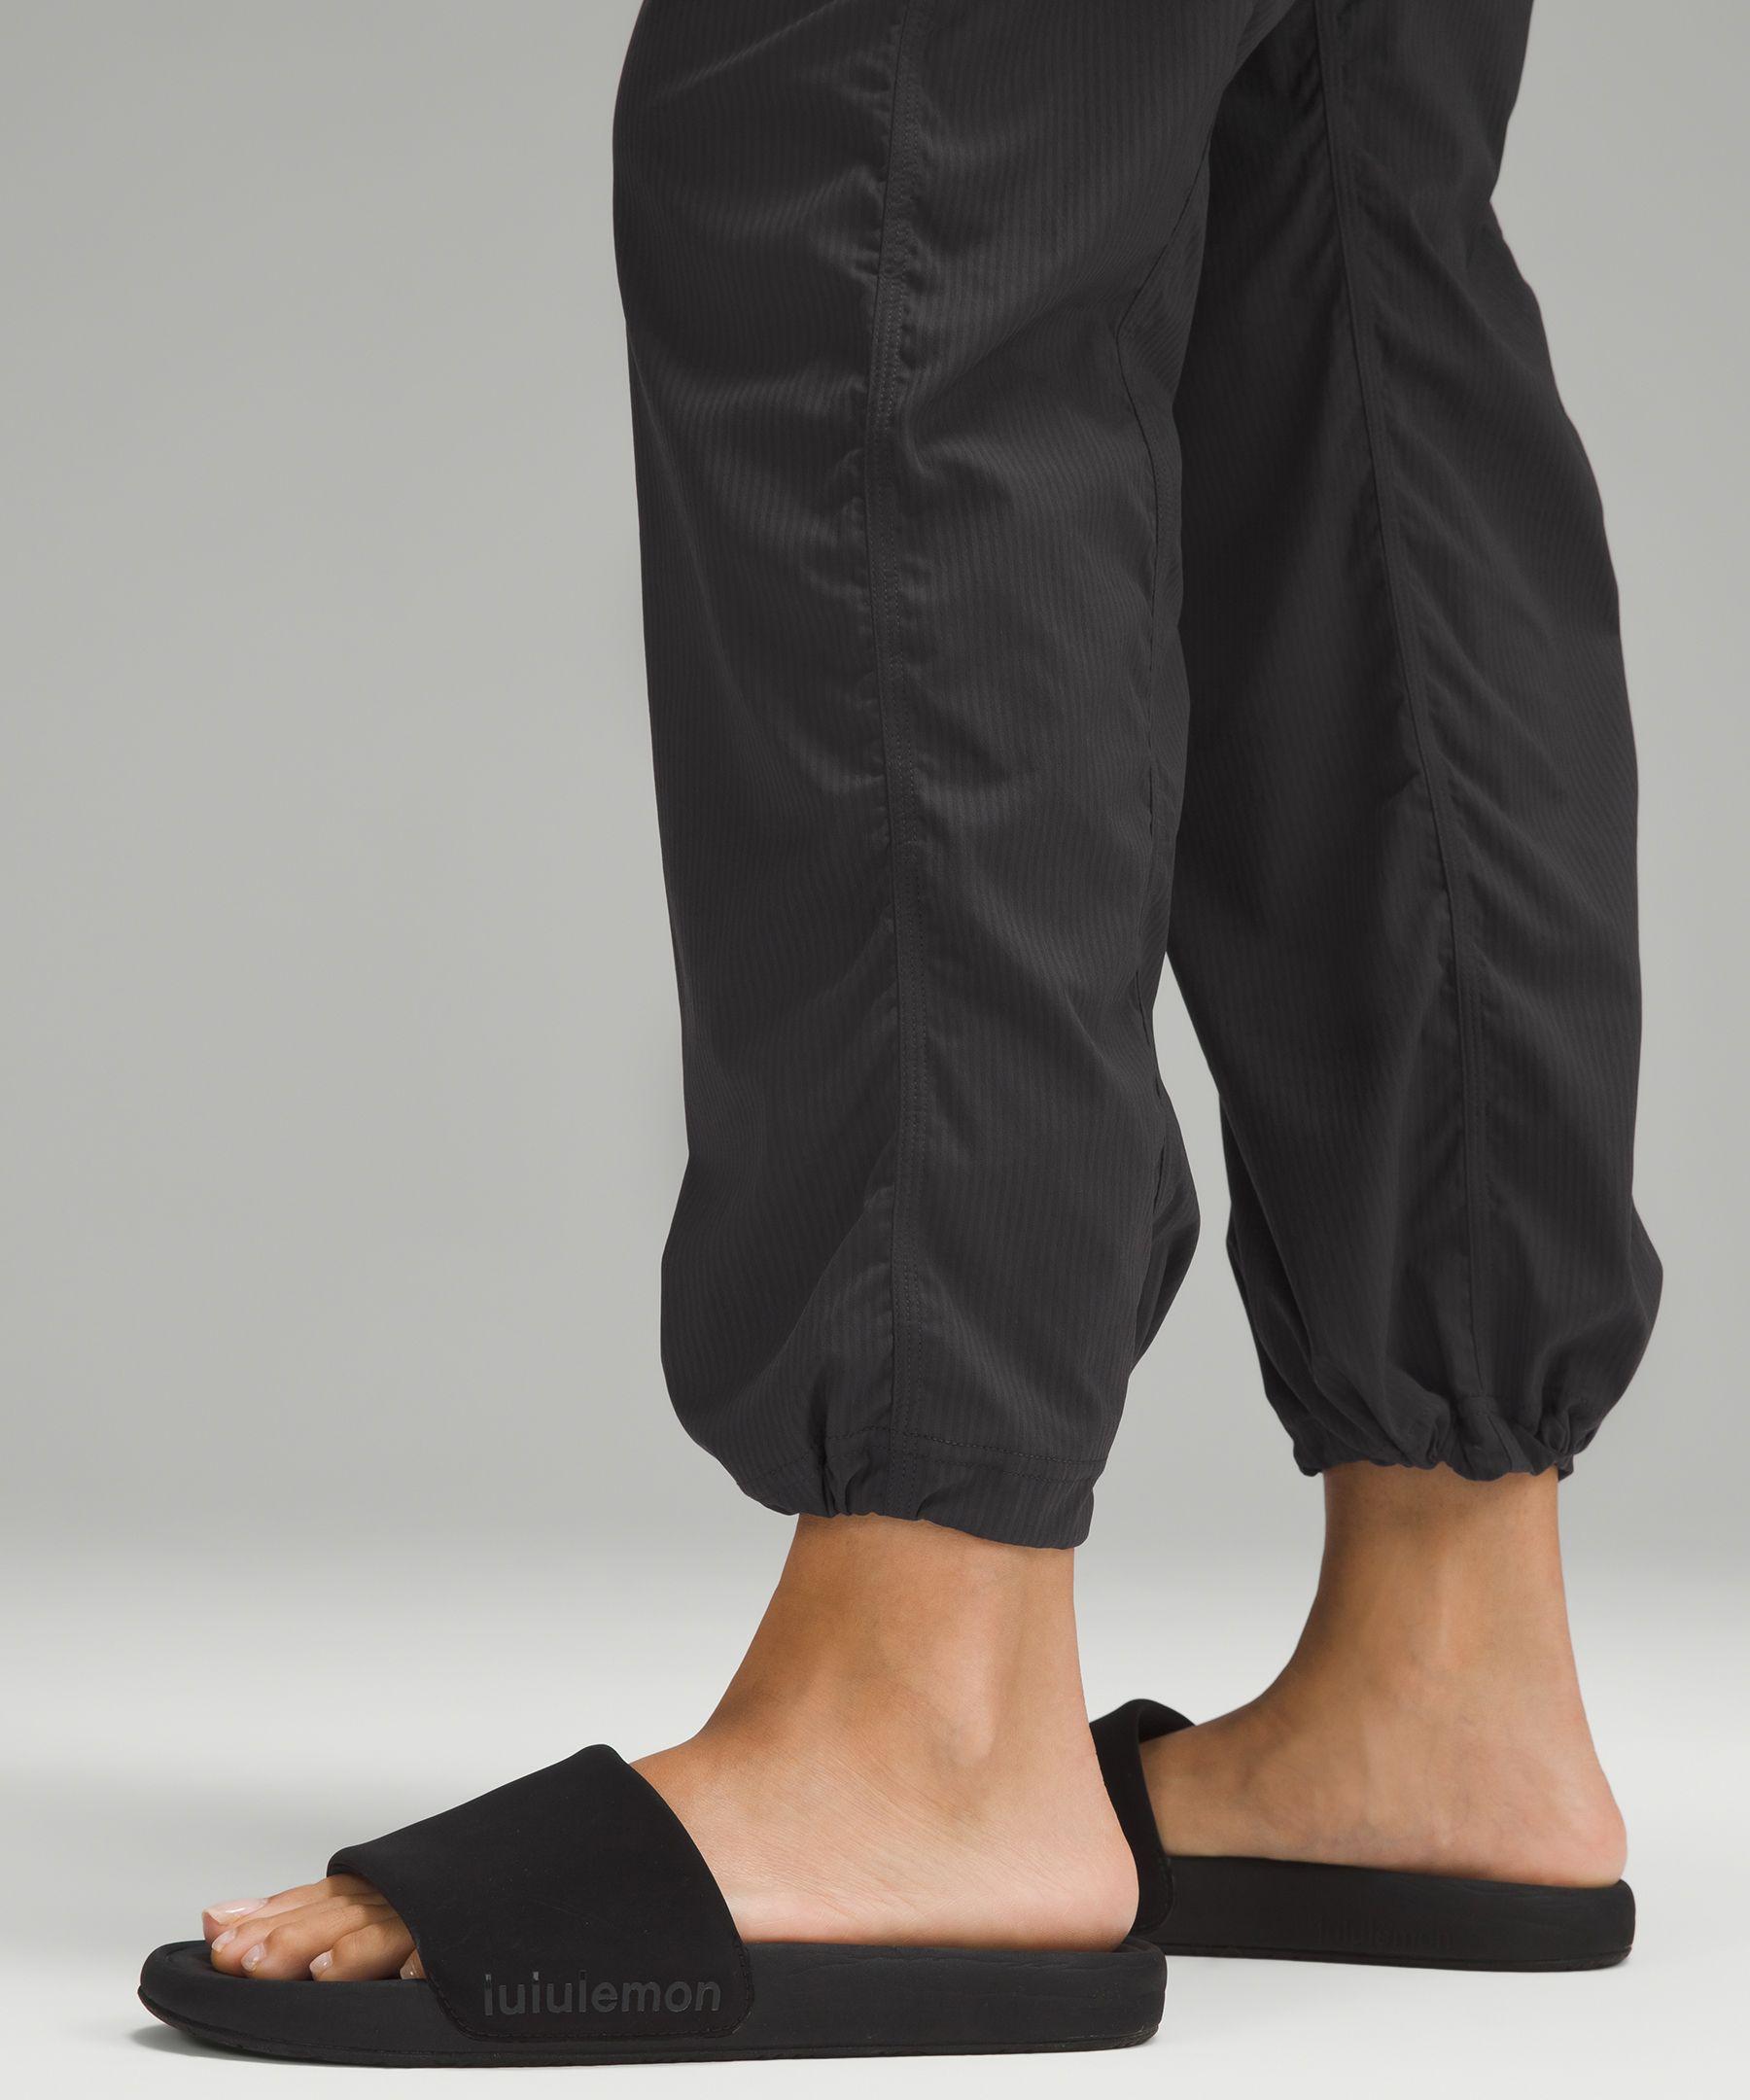 Lululemon lined dance studio mid rise pants black adjustable drawcor ankle  US 8